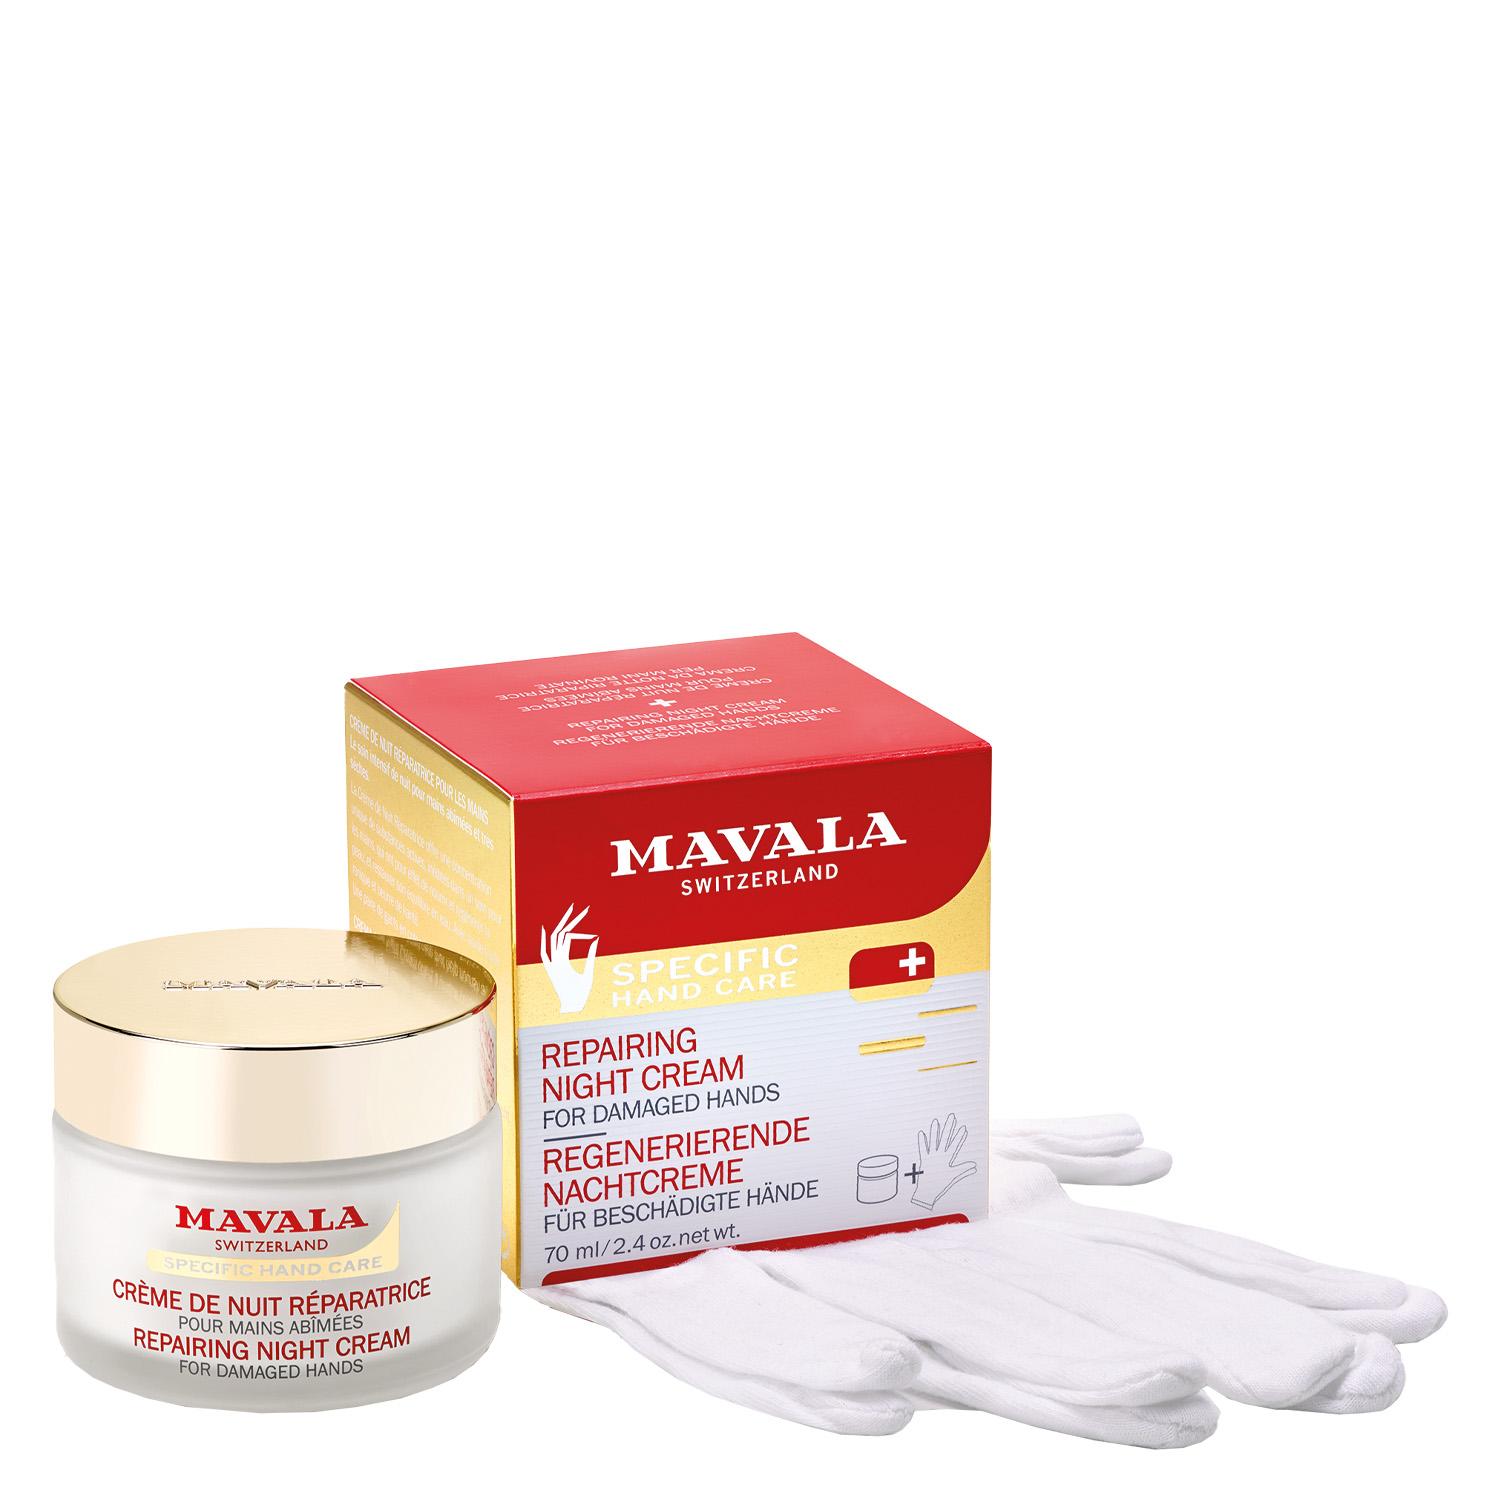 MAVALA Care - Repairing Night Cream